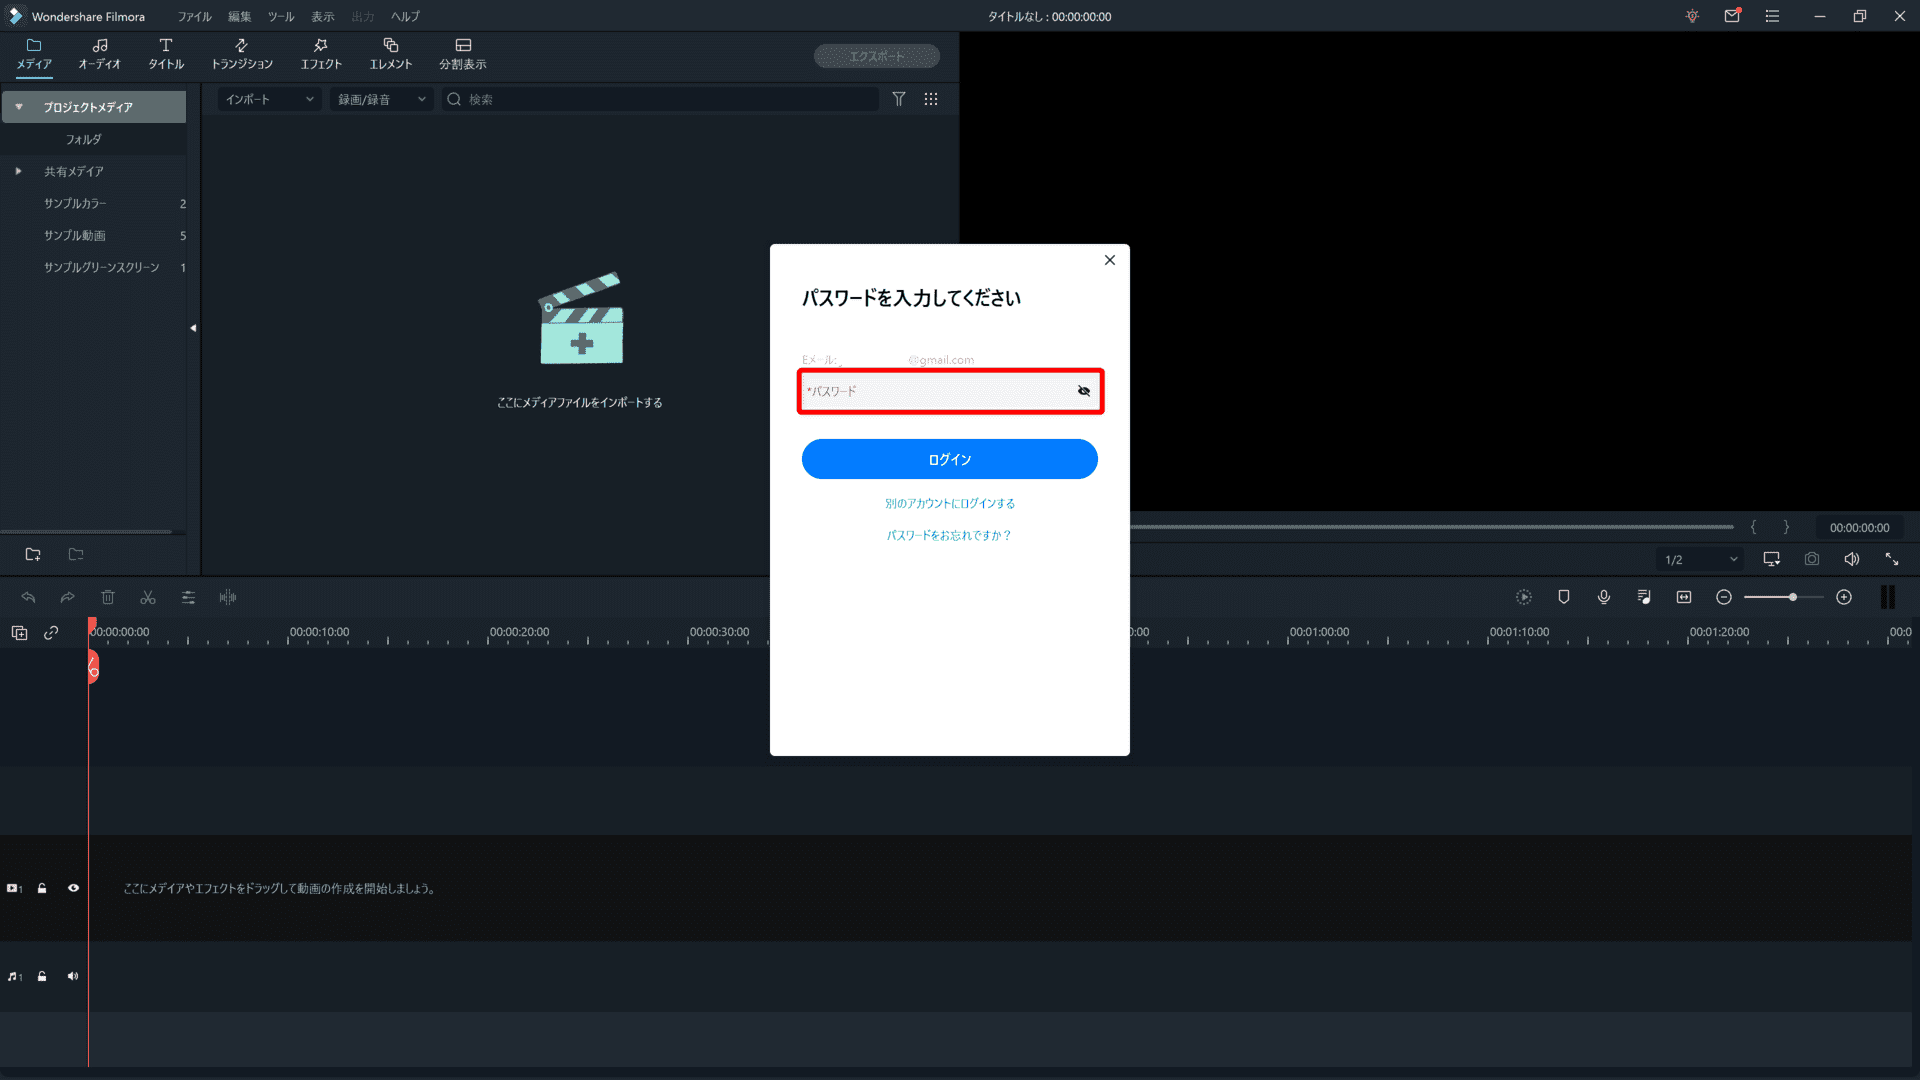 Filmora Xとは？｜動画編集ソフトFilmora Xの概要や基本的な使い方について解説｜基本的な使い方について：続いてパスワードを入力して「ログイン」をクリックすれば、ログイン完了です。